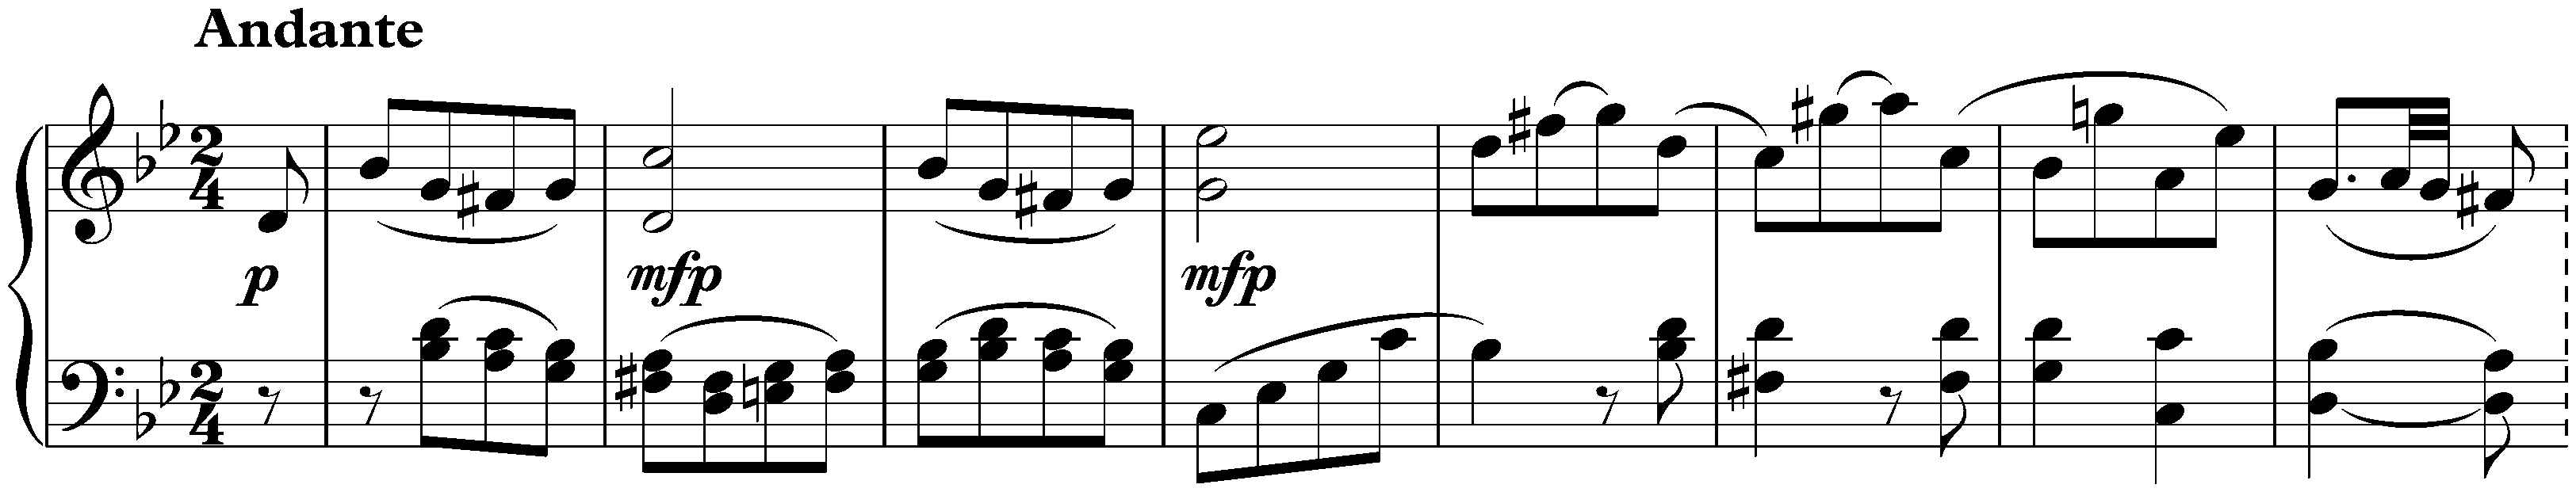 Sonata no. 19 in G minor, op. 49 no. 1; 1. Andante